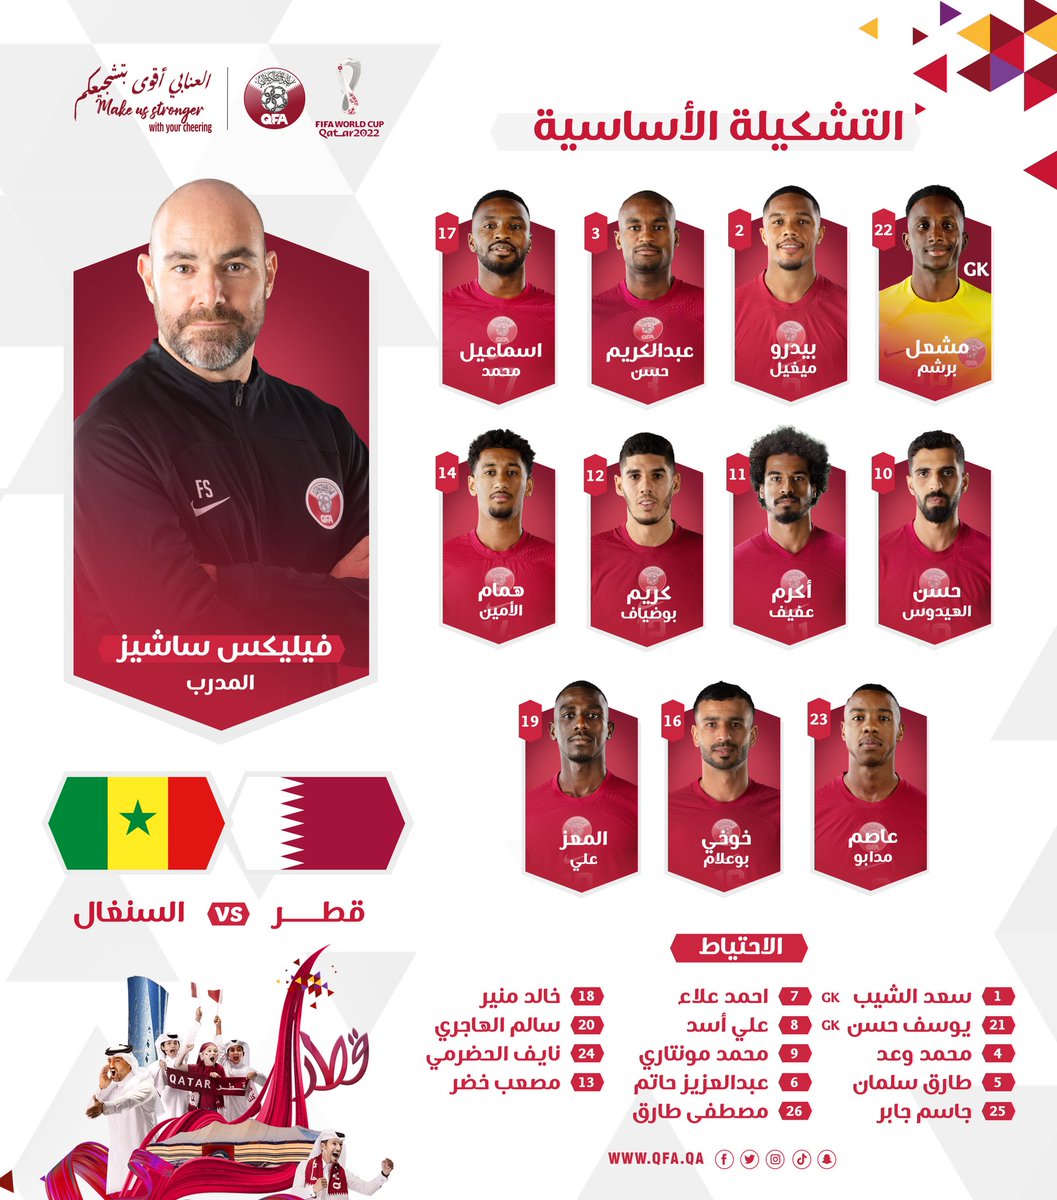 قطر والسنغال مباشر لحظة بلحظة في كأس العالم 2022 FiaGU4qXEAESvJg?format=jpg